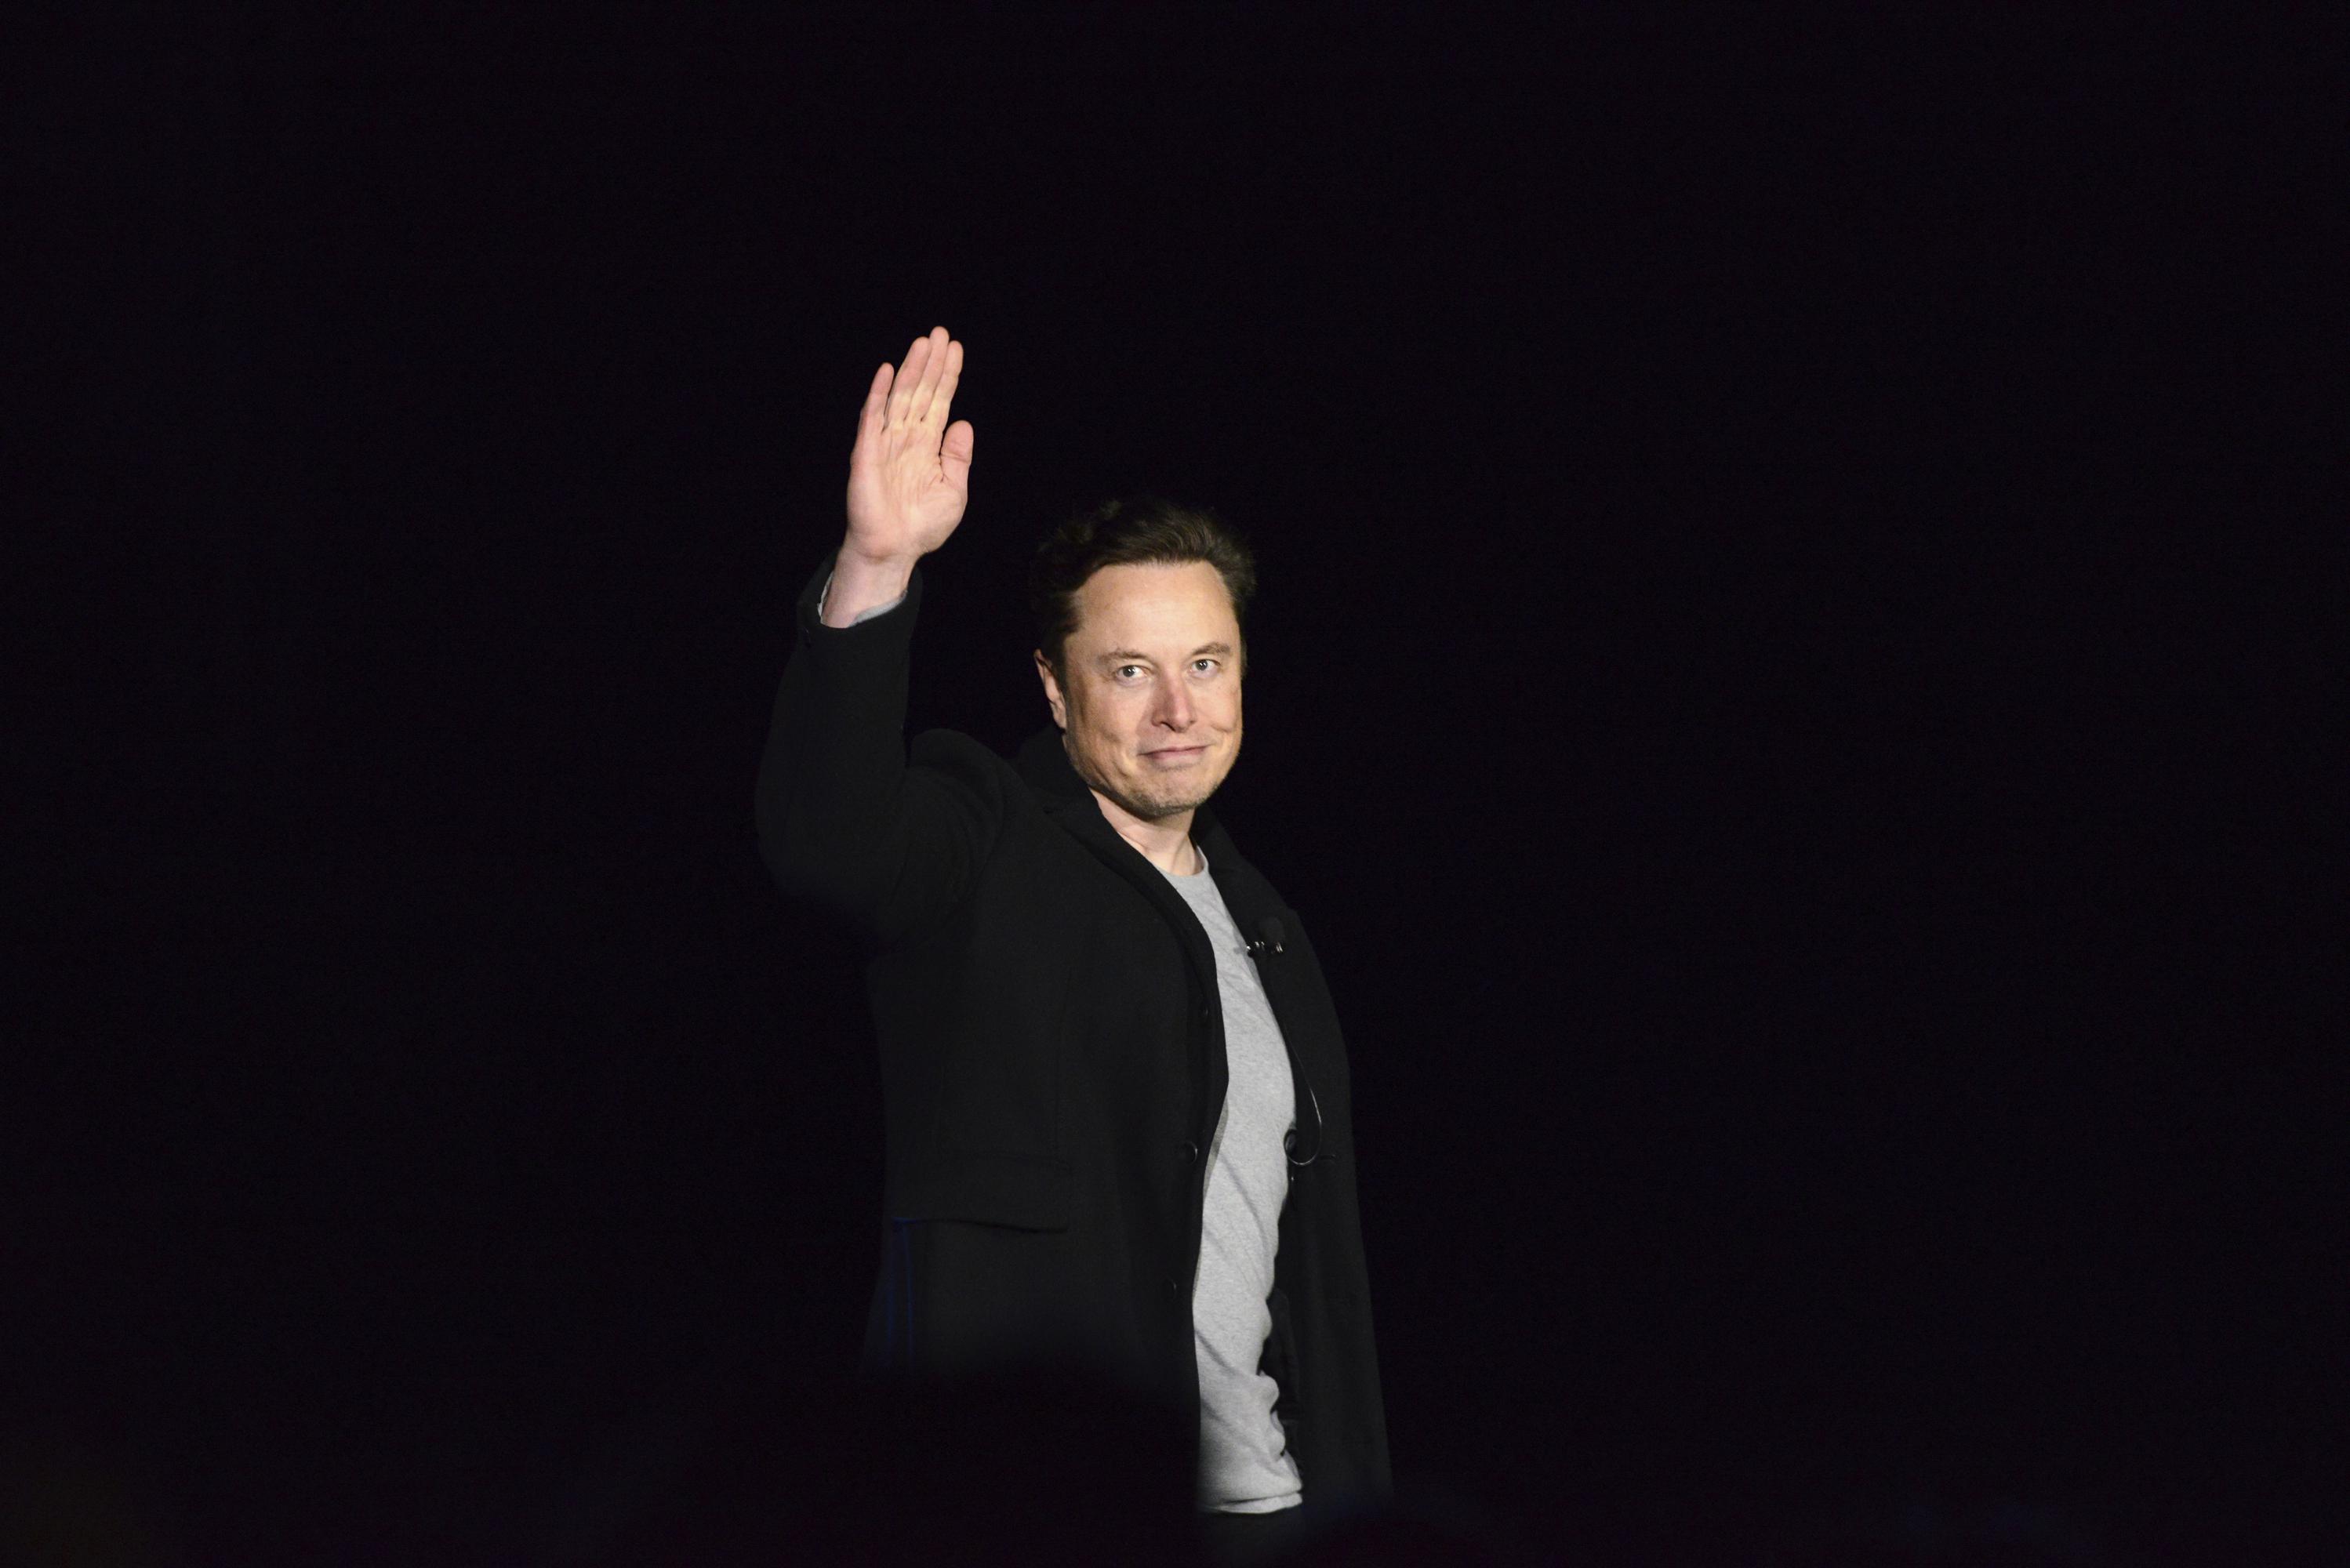 يطلب مساهمو Tesla من القاضي إسكات Musk في قضية الاحتيال